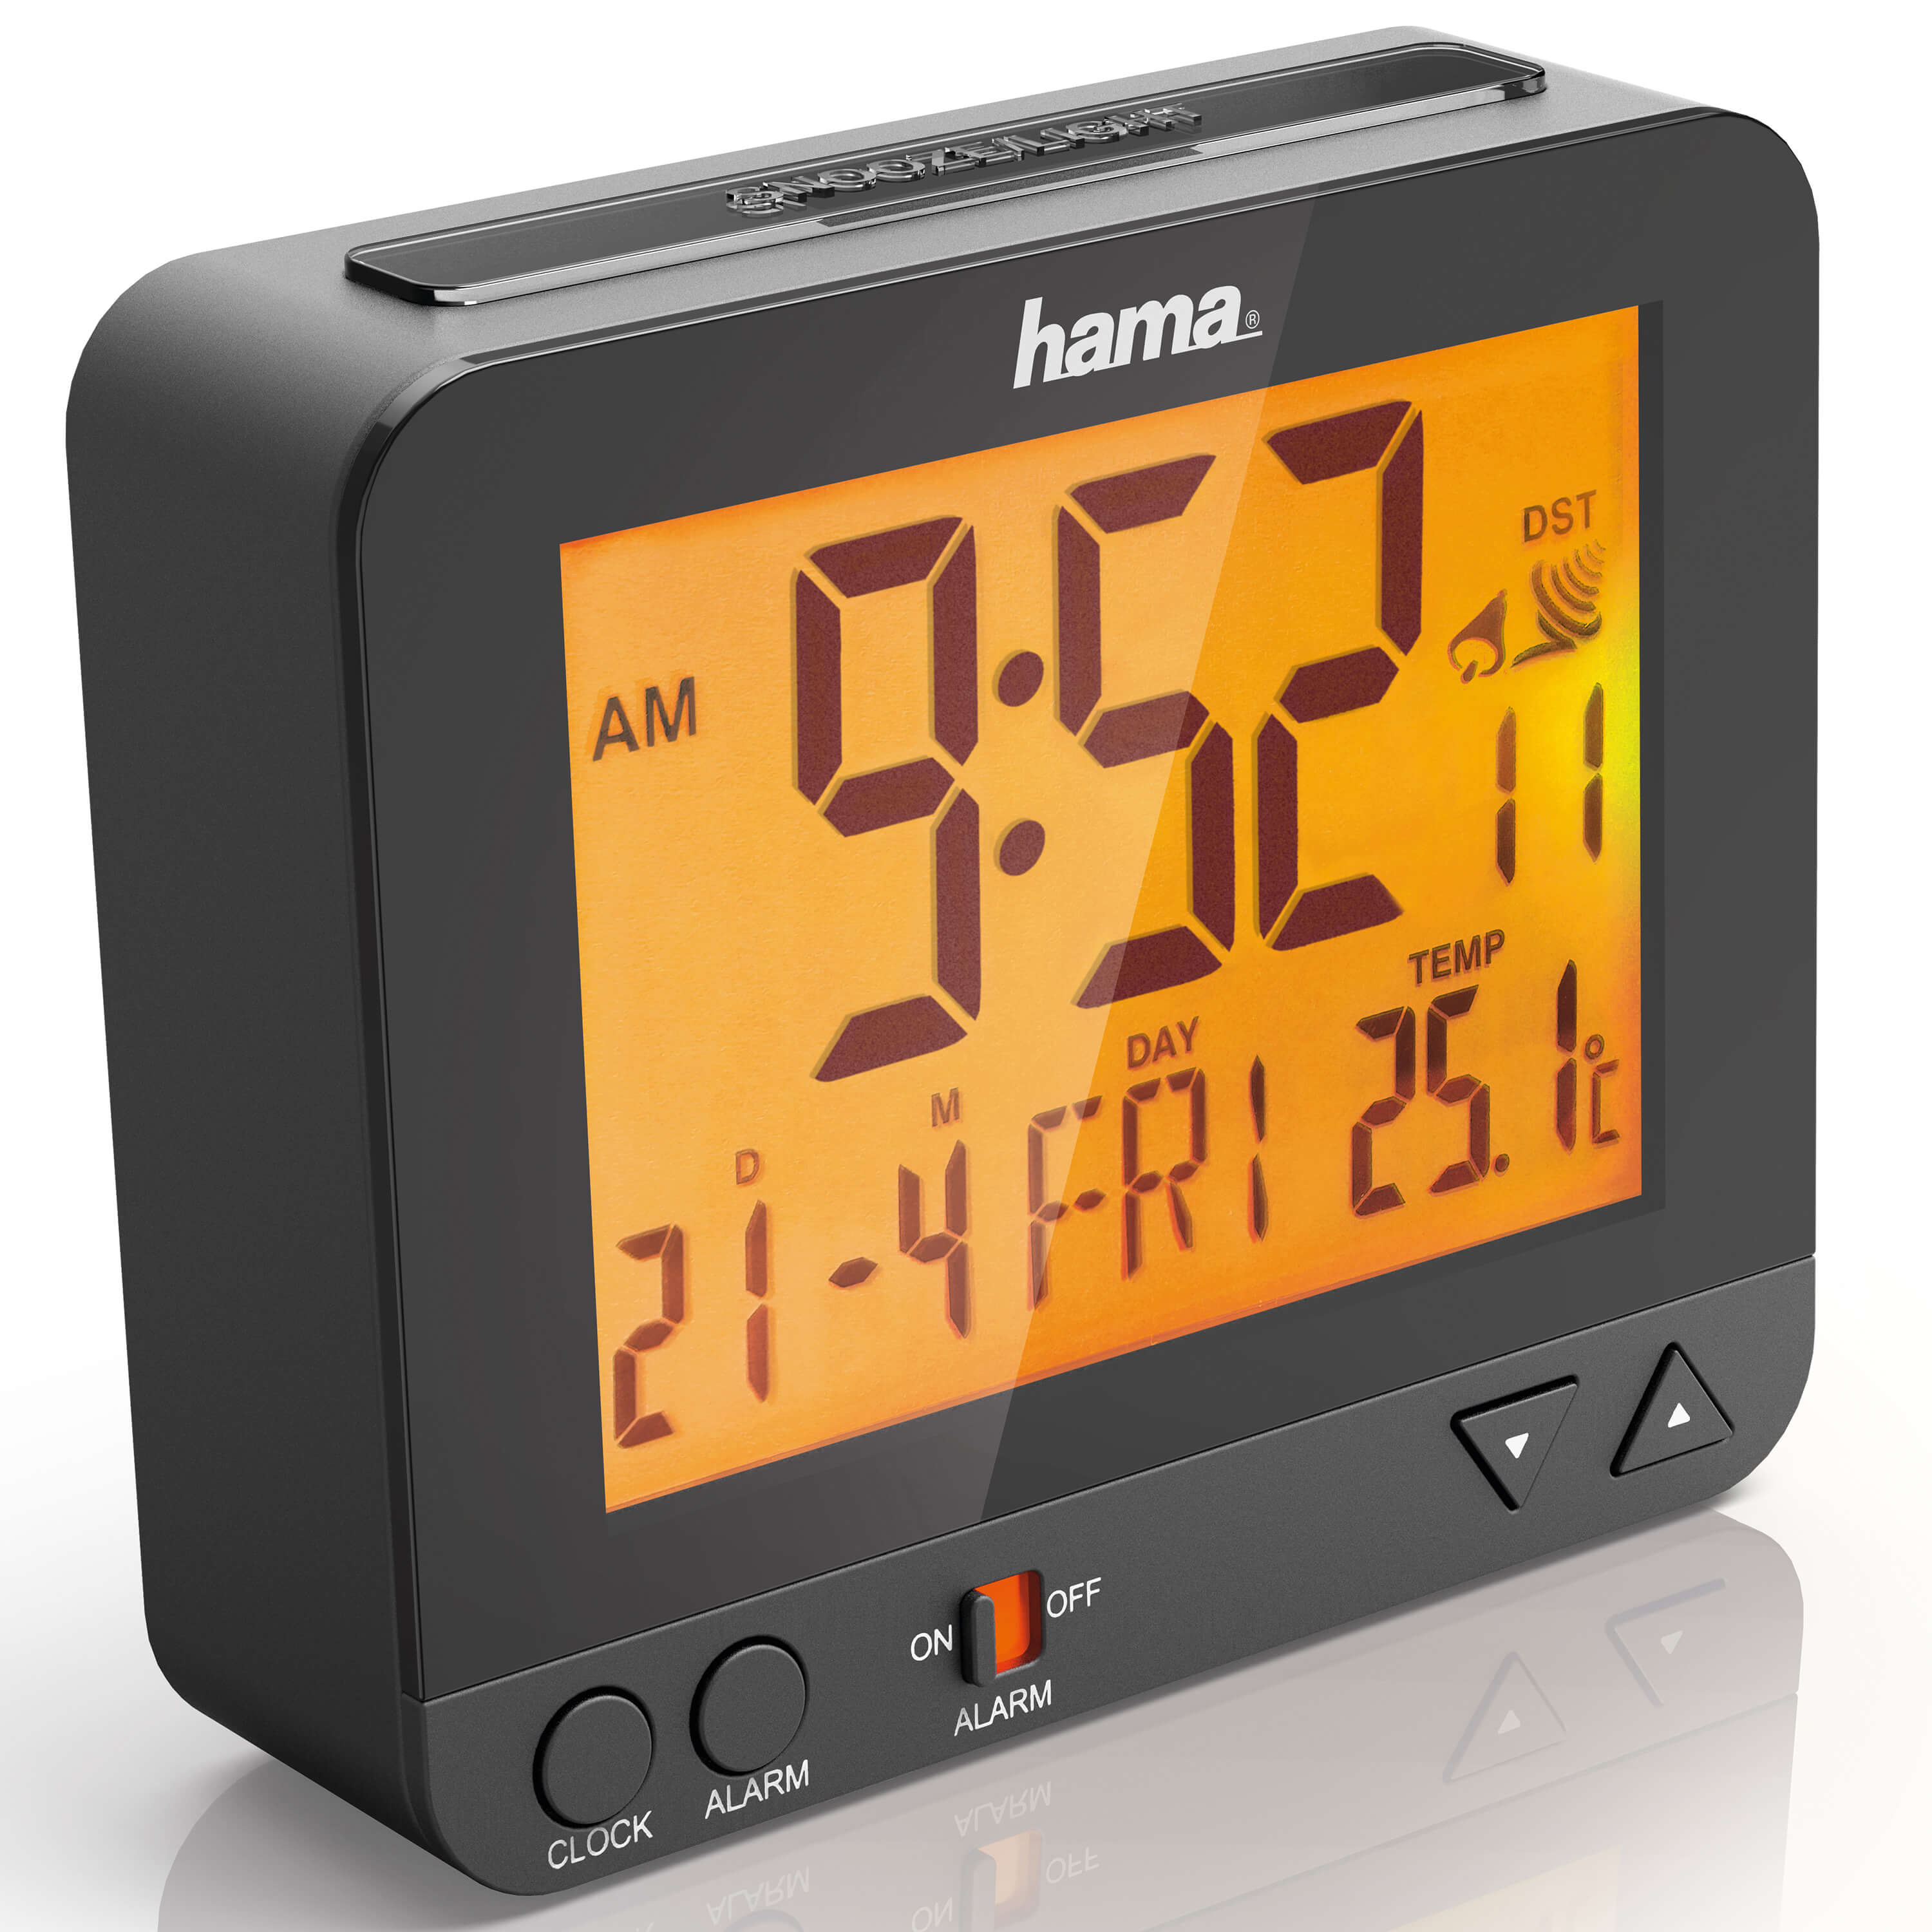 Radio Controlled Alarm Clock RC550 Black